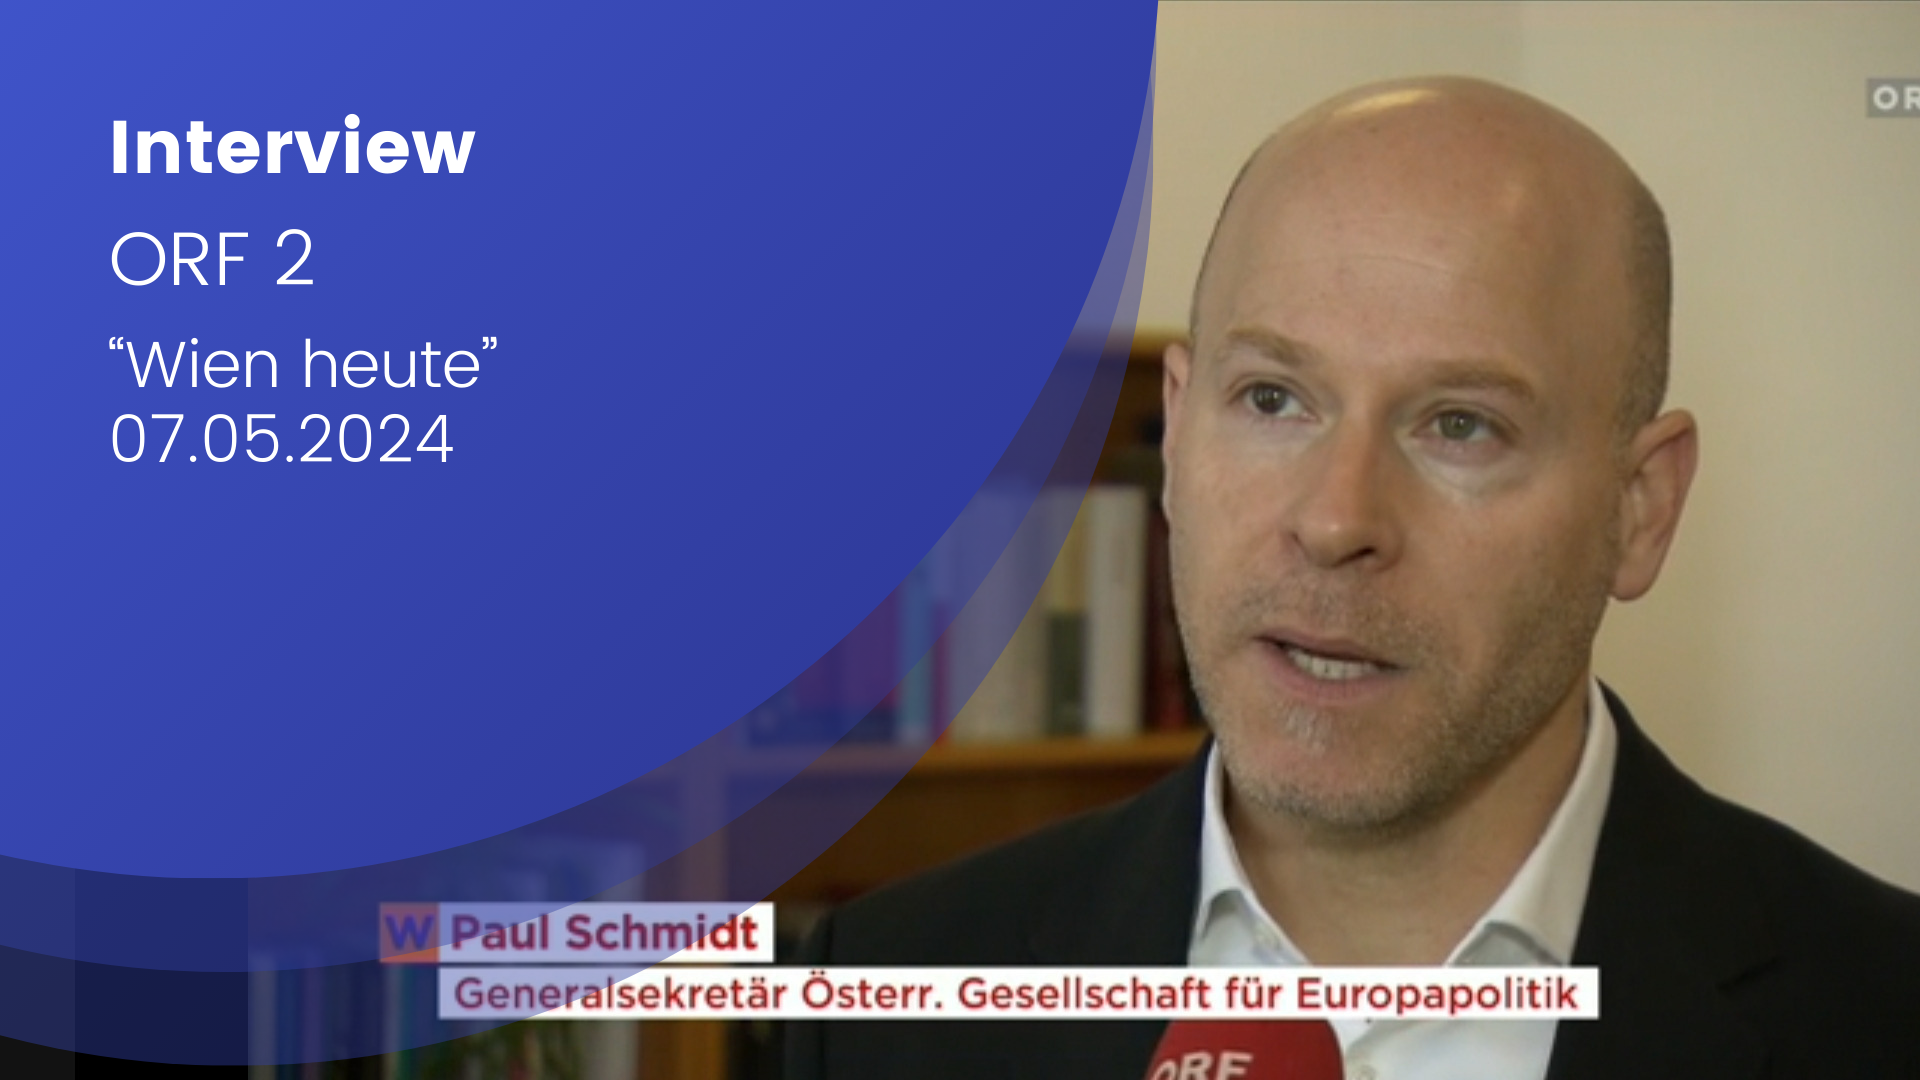 Paul Schmidt im Interview: Texteinblendung durch den ORF, blauer Halbkreis mit Aufschrift "Interview, ORF 2 Wien heute 07.05.2024"